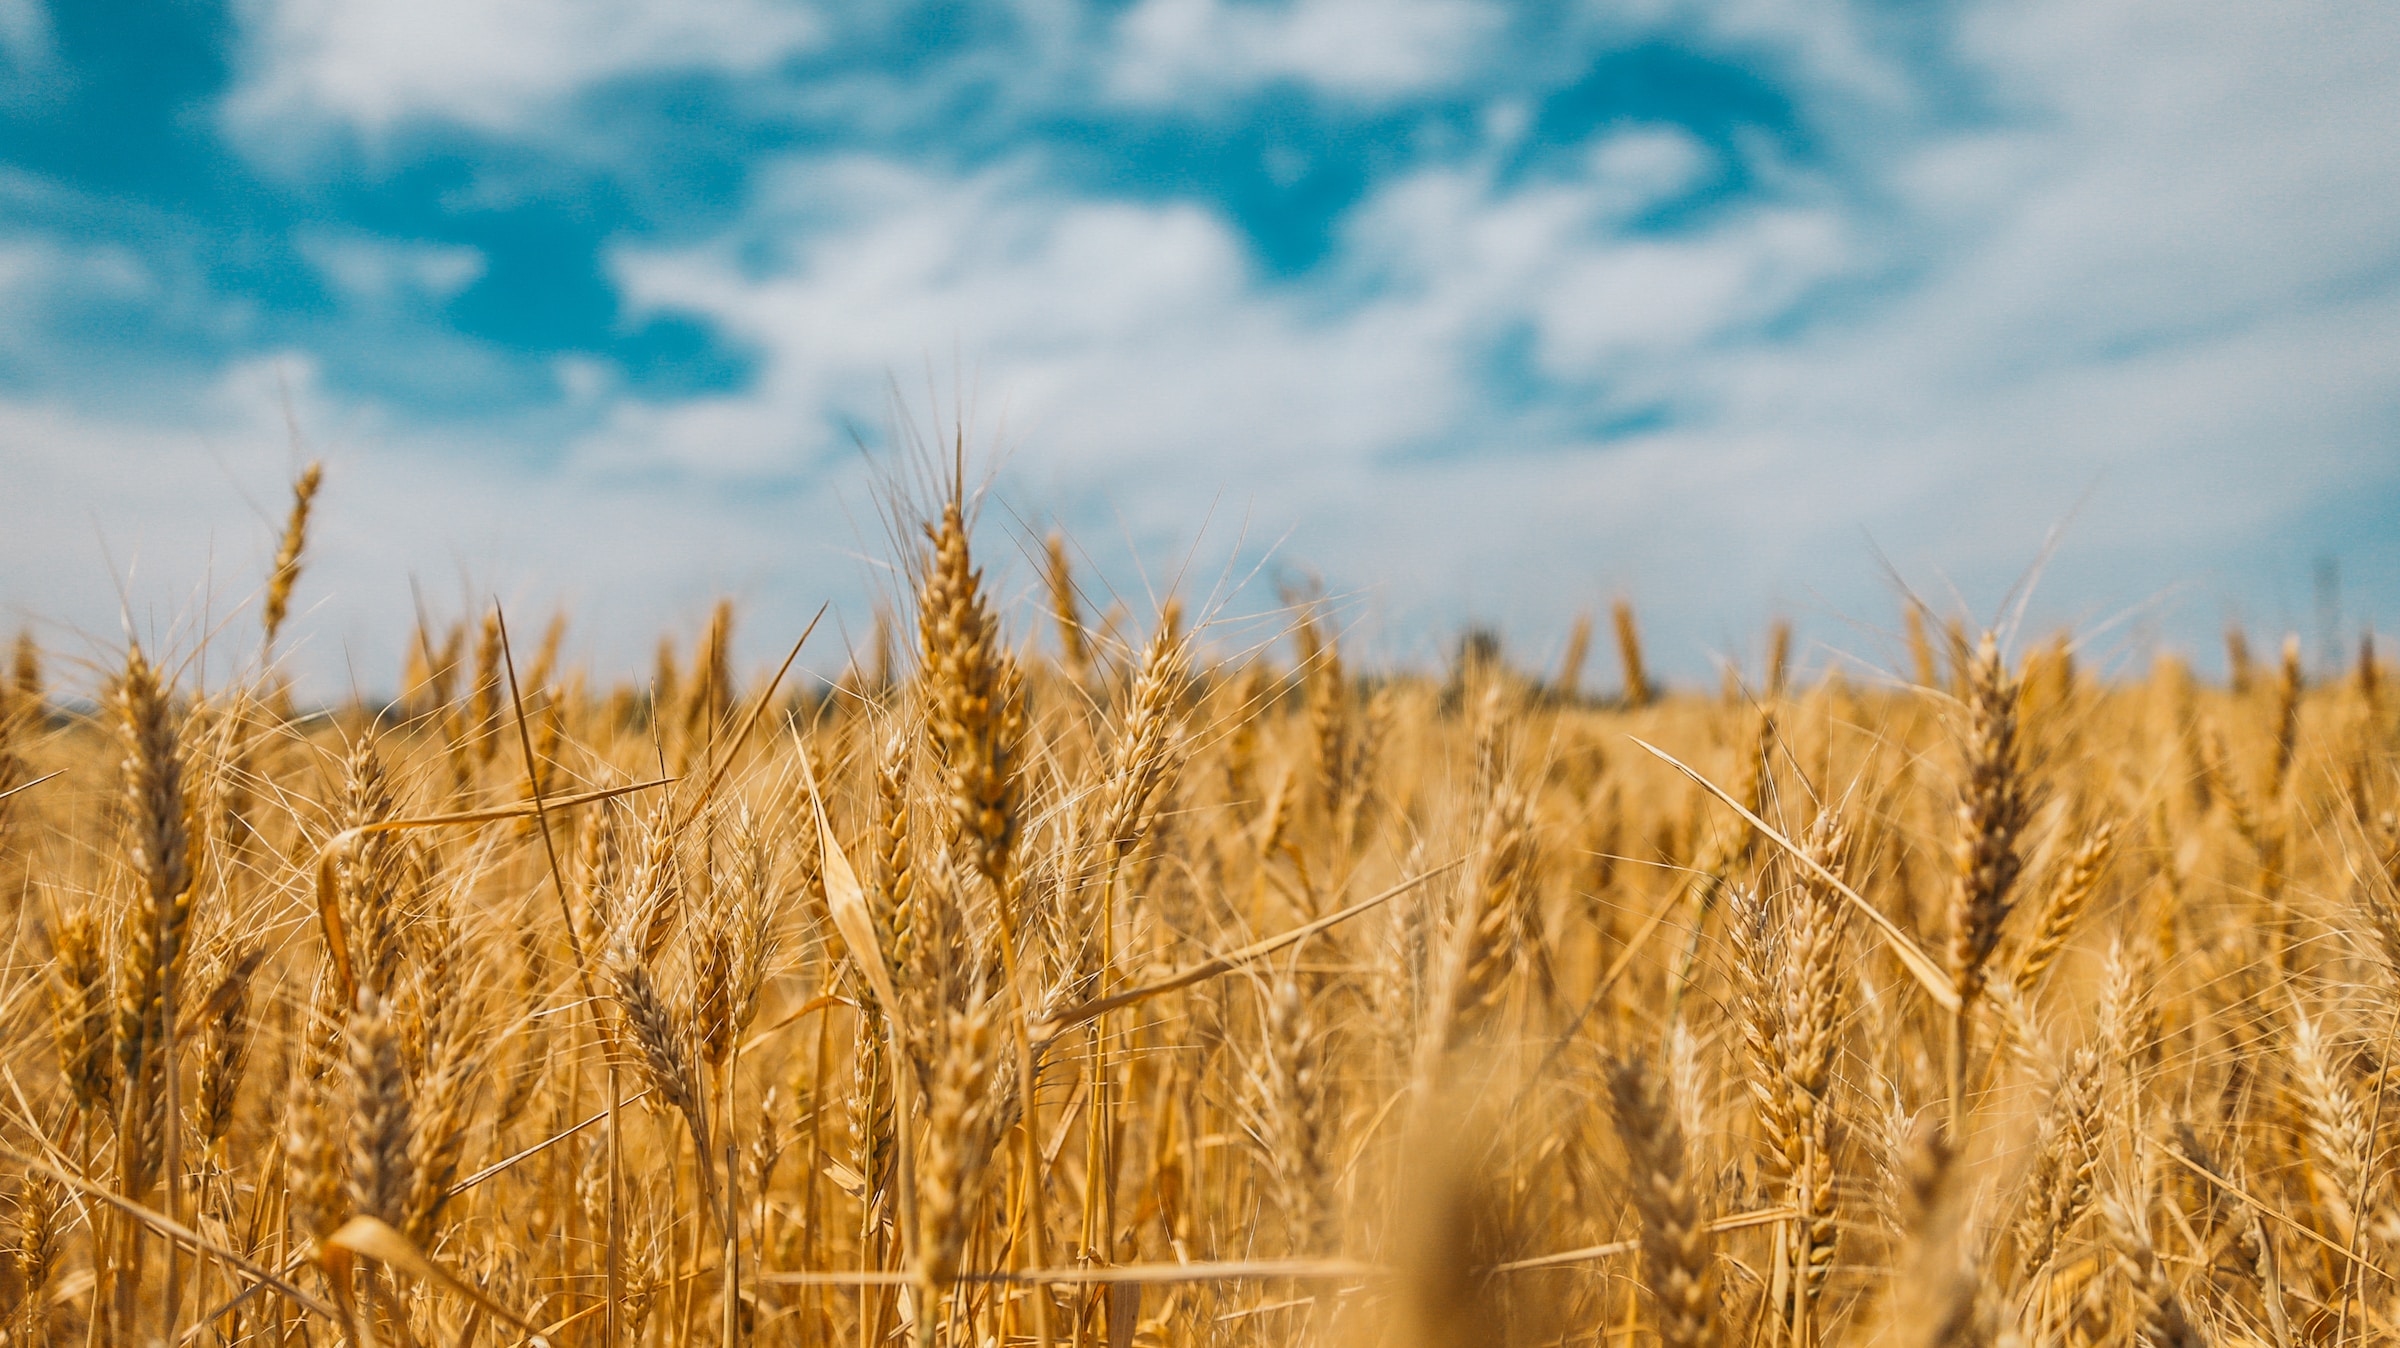 Field of grain in Ukraine